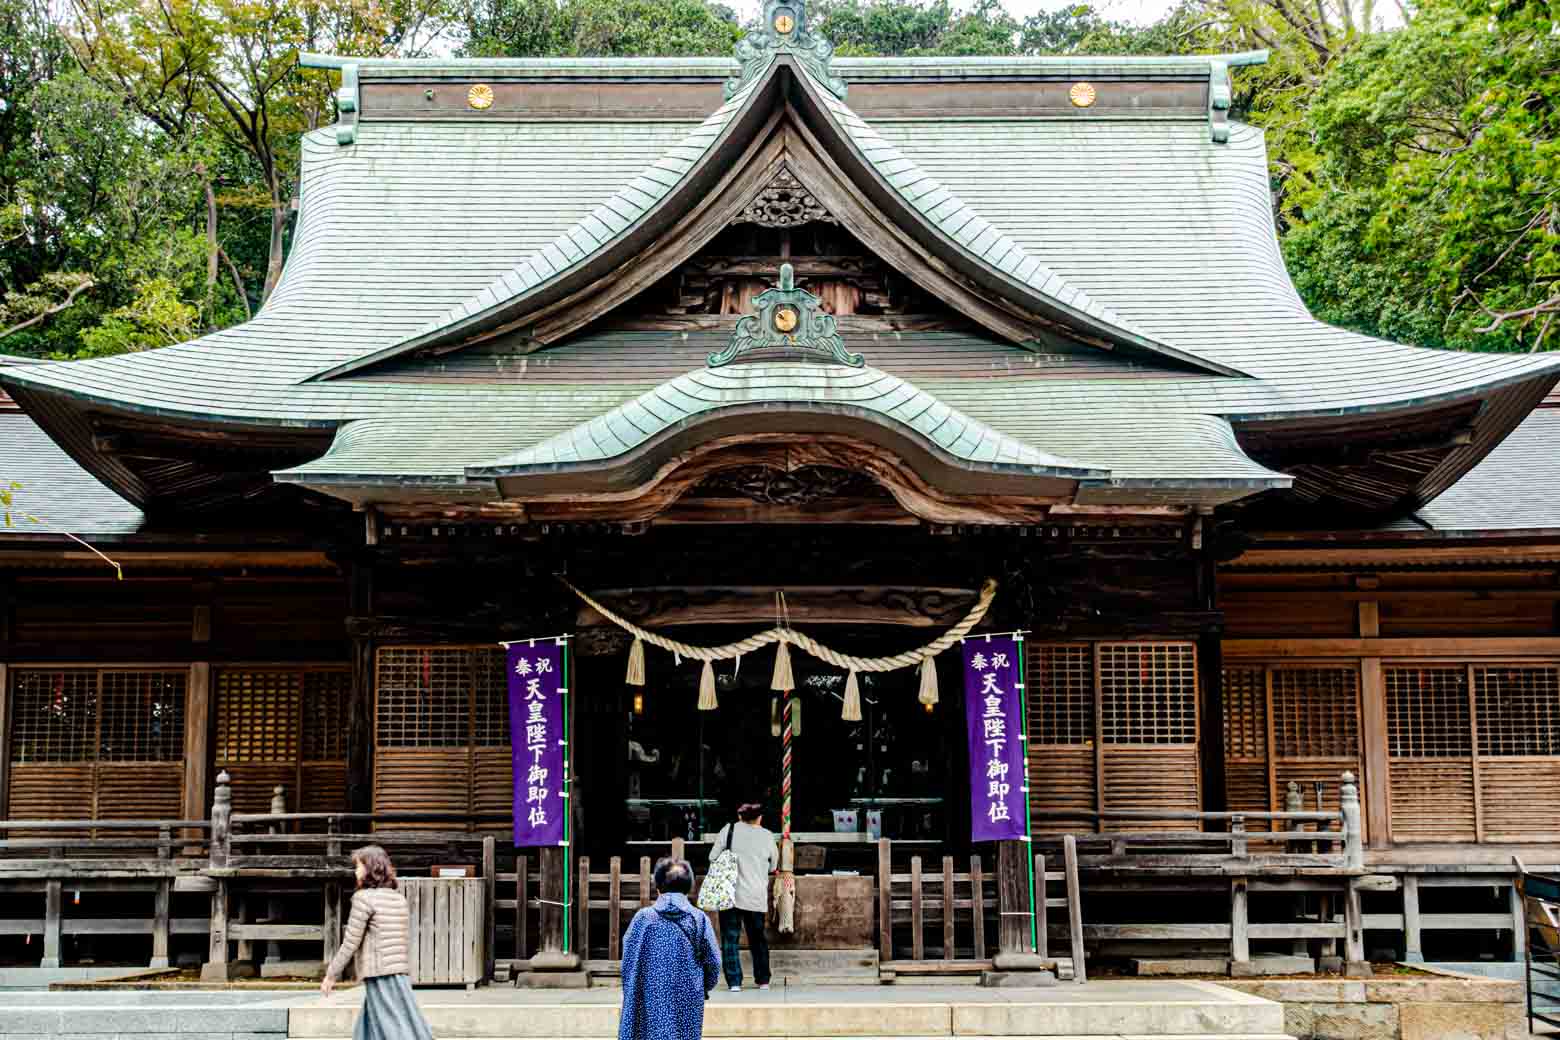 1300年近い歴史を有する「師岡熊野神社」